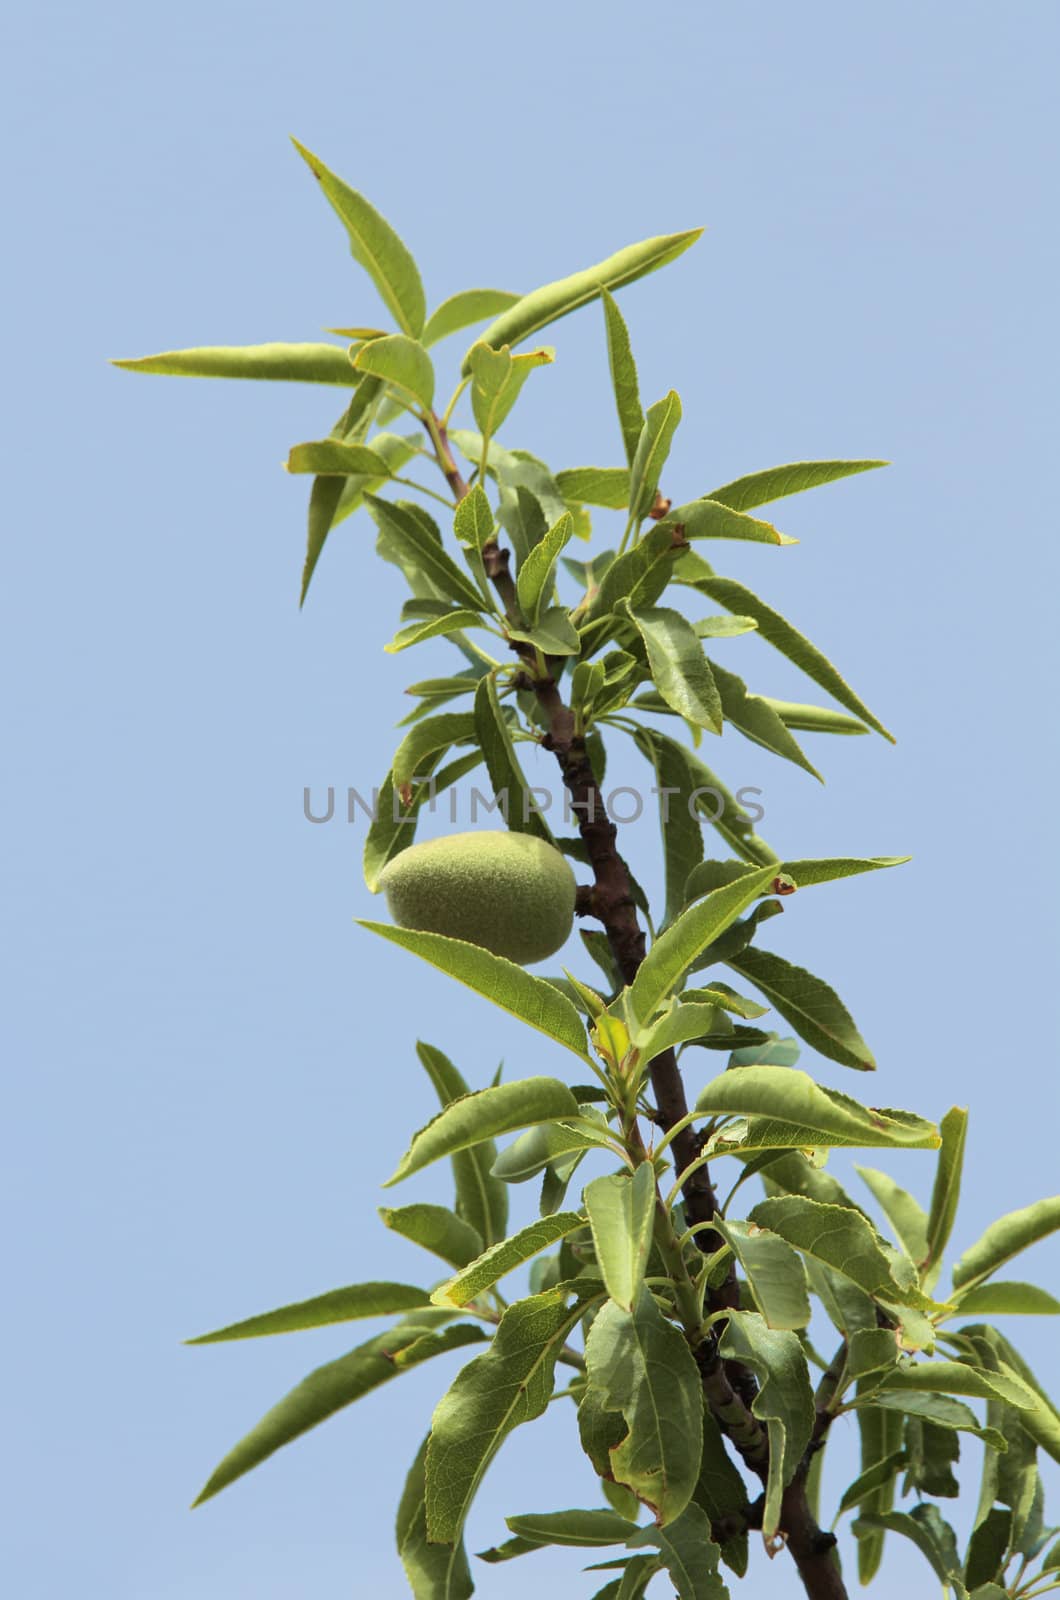 Almond tree detail by daboost